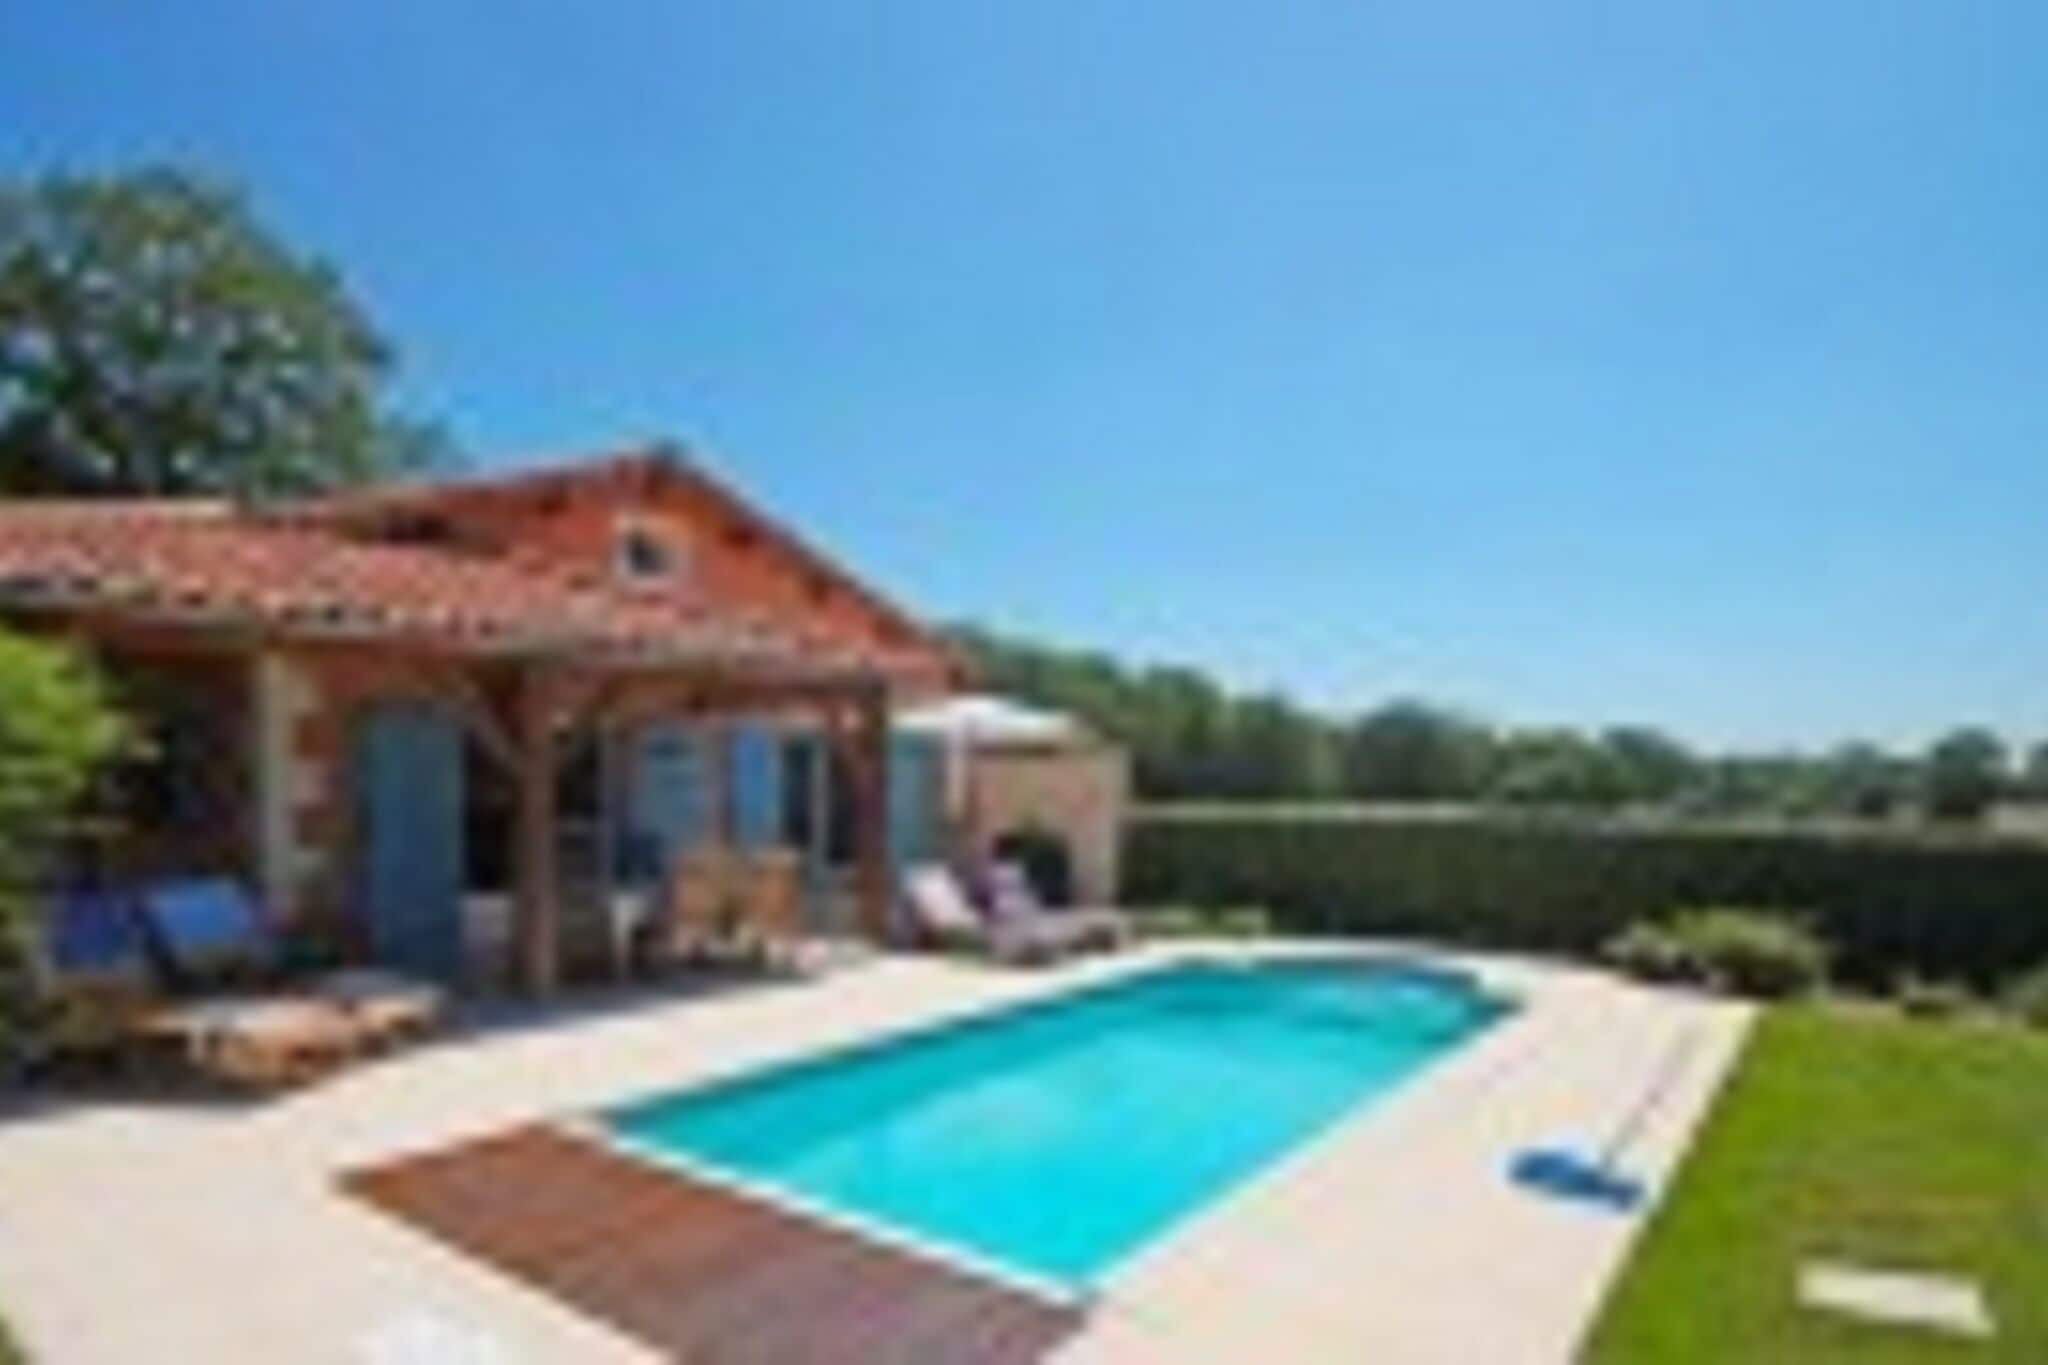 Moderne villa met prive-zwembad in het prachtige Loire